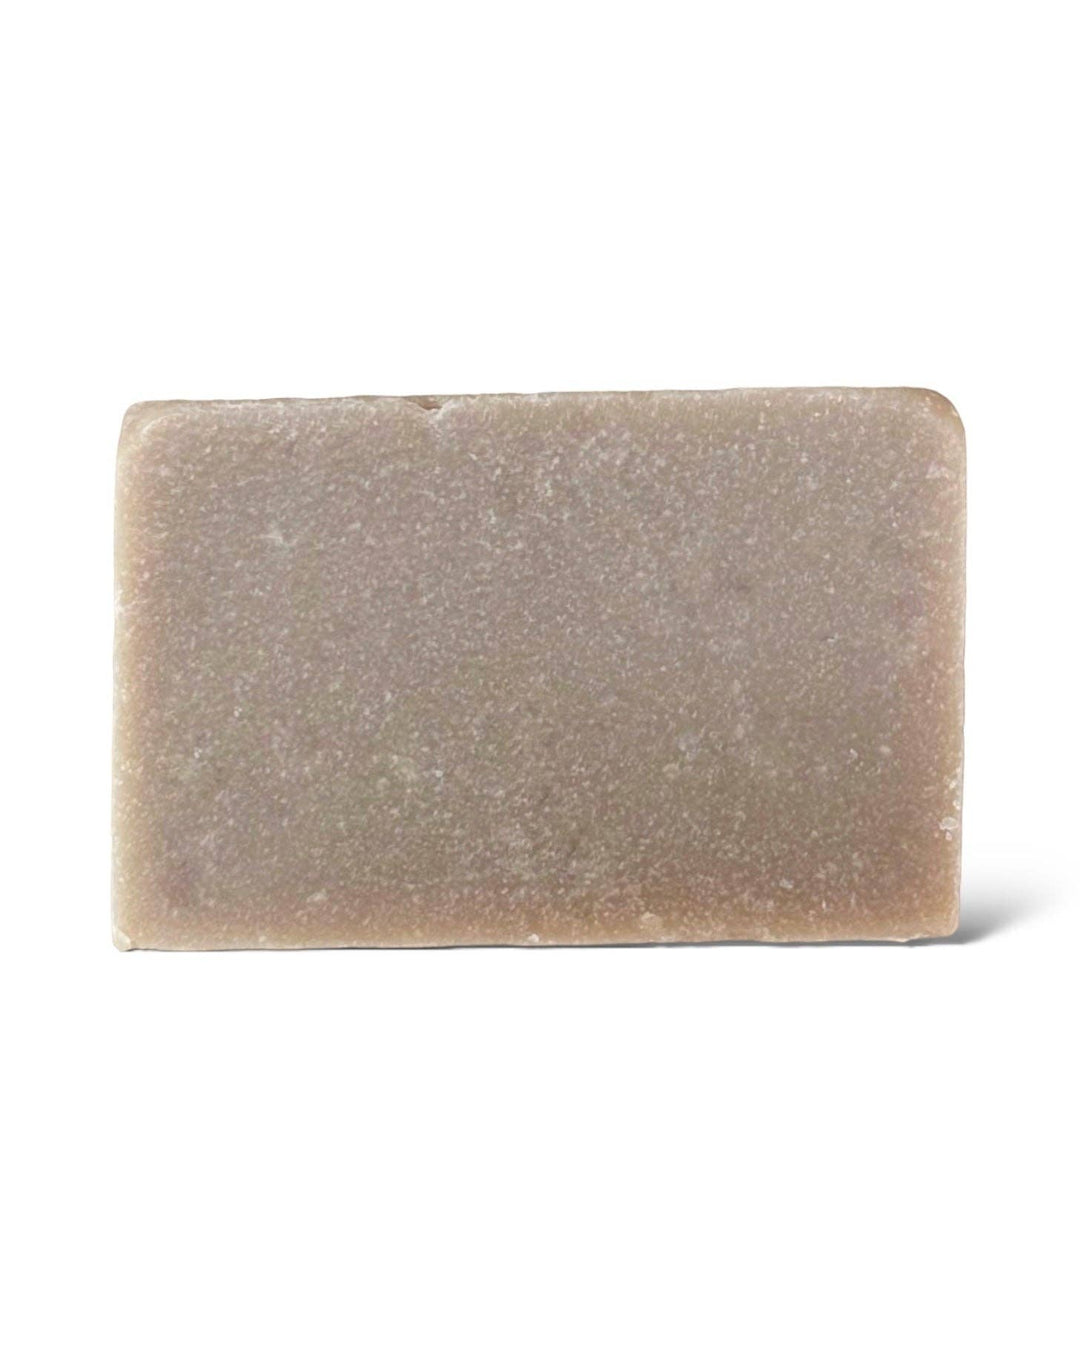 Cold Process Bar Soap - Sanctuary